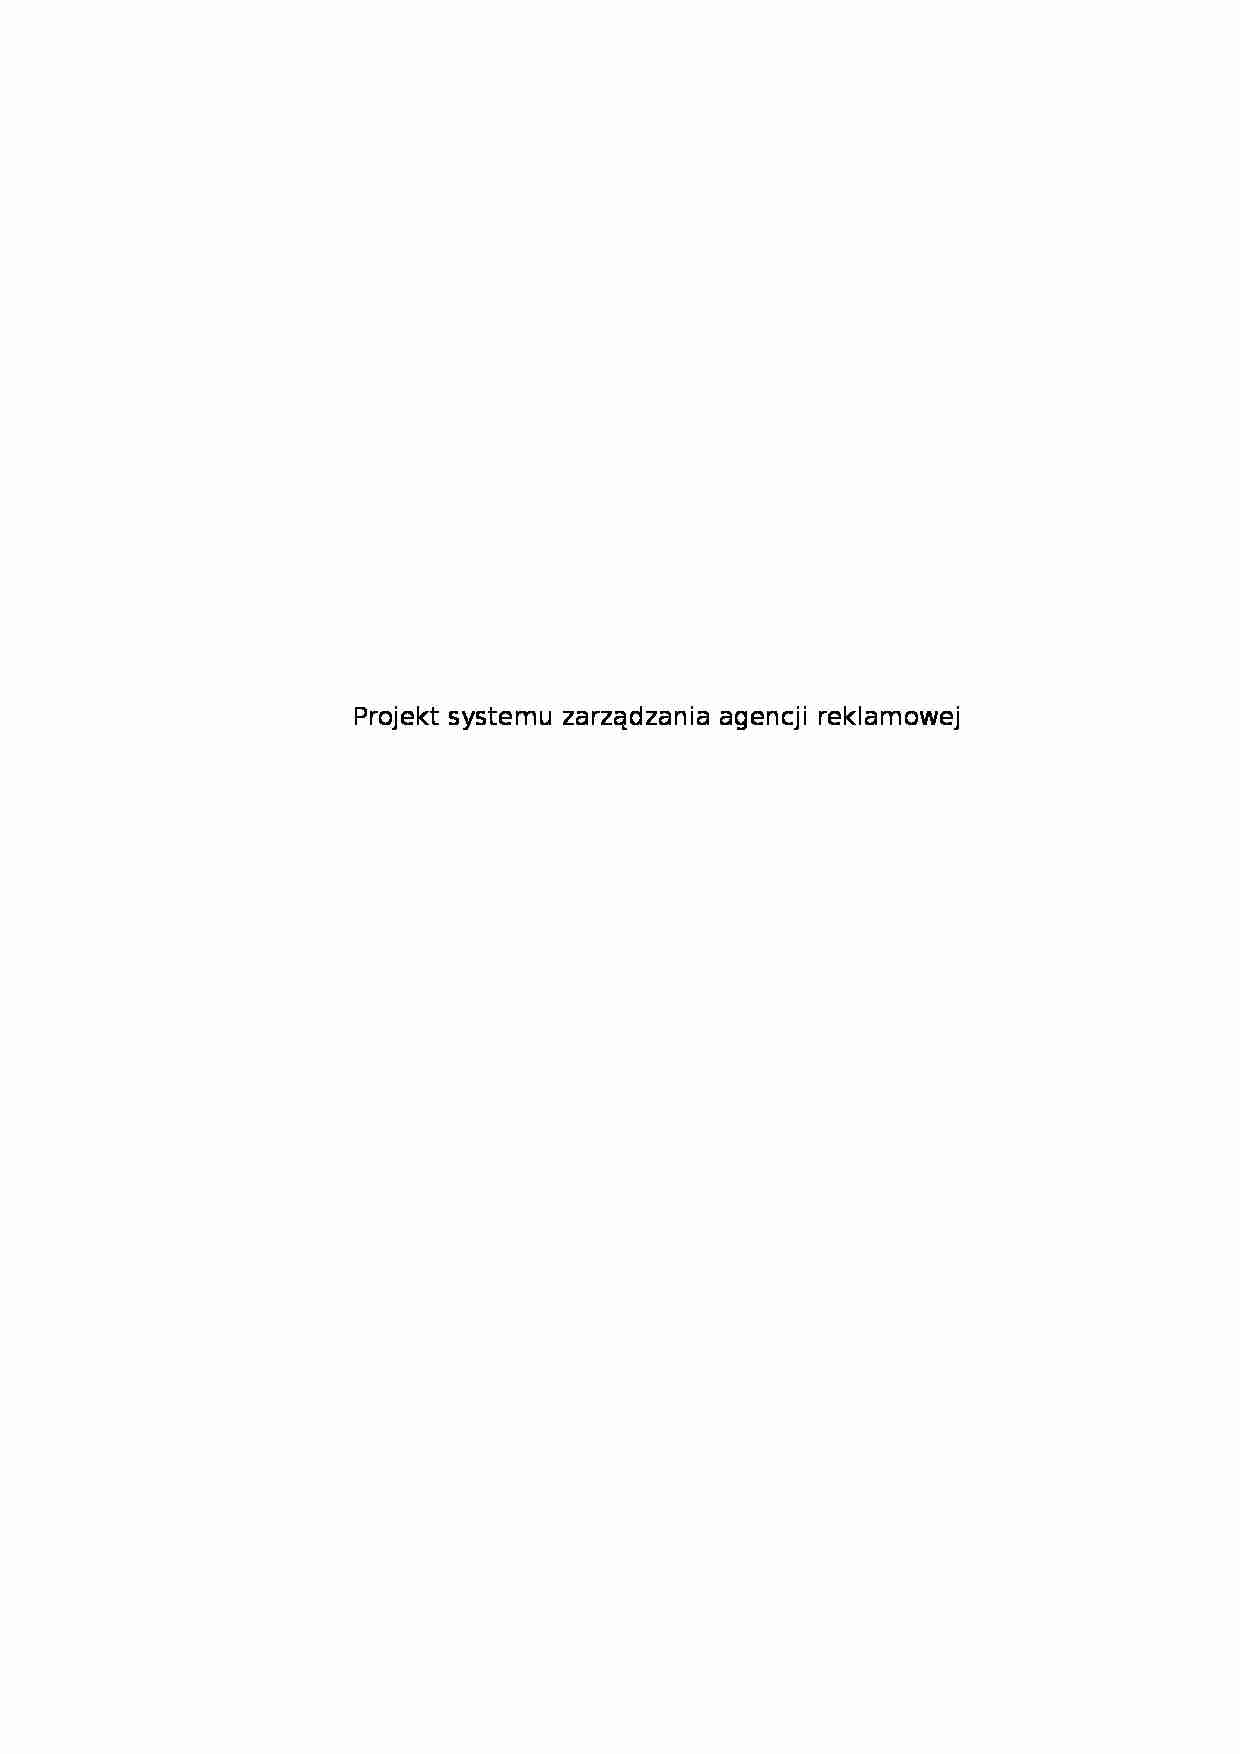 Projekt systemu zarządzania agencji reklamowej - Bilans przedsiębiorstwa - strona 1